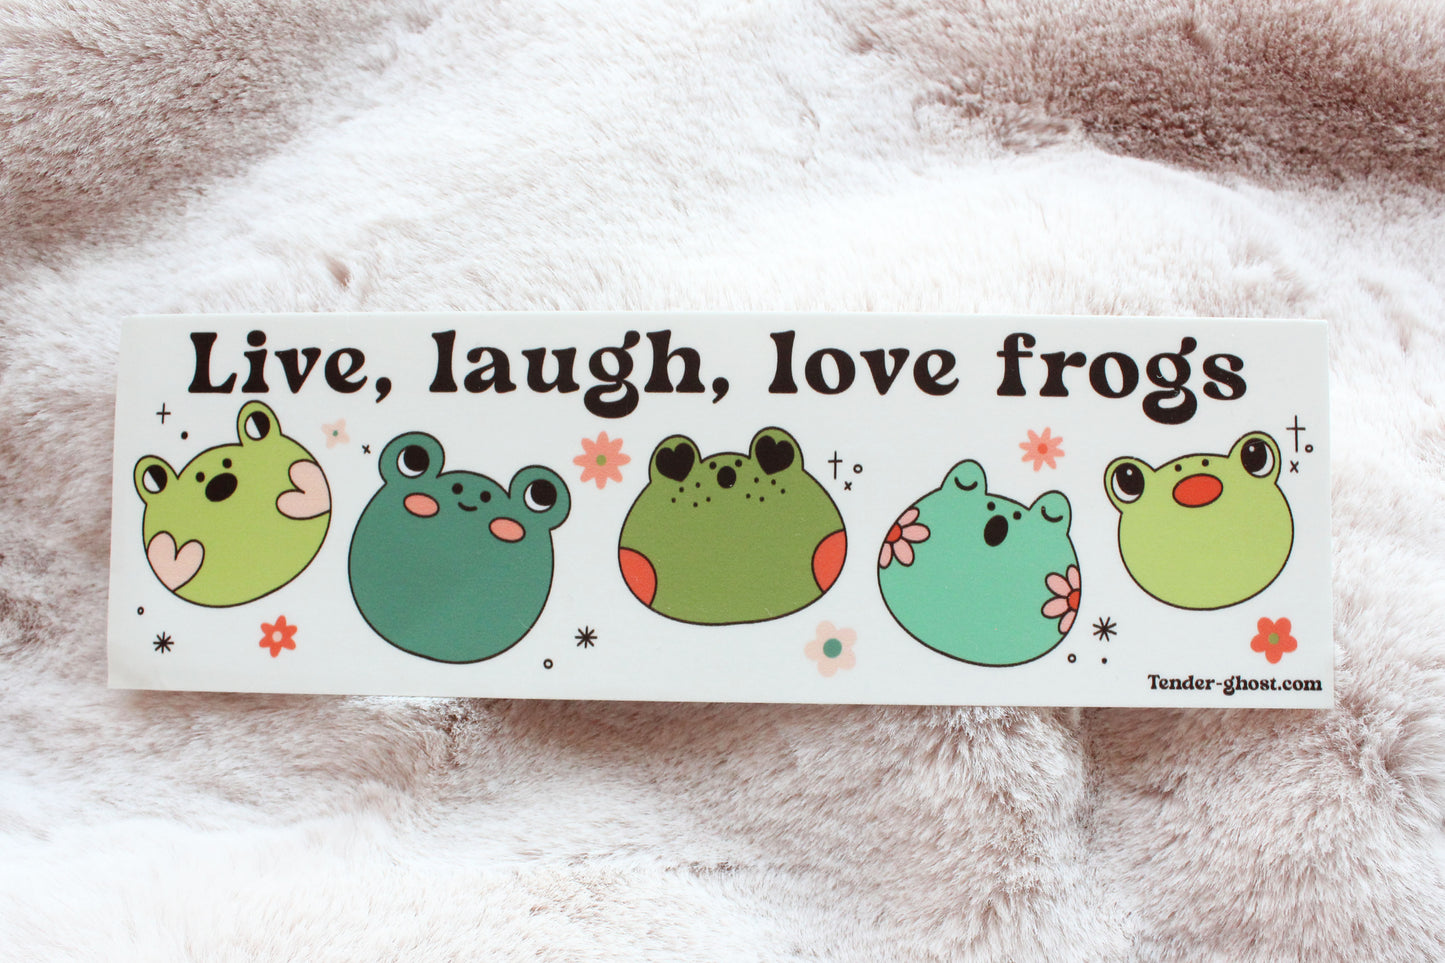 Live, Laugh, Love Frogs Bumper Sticker